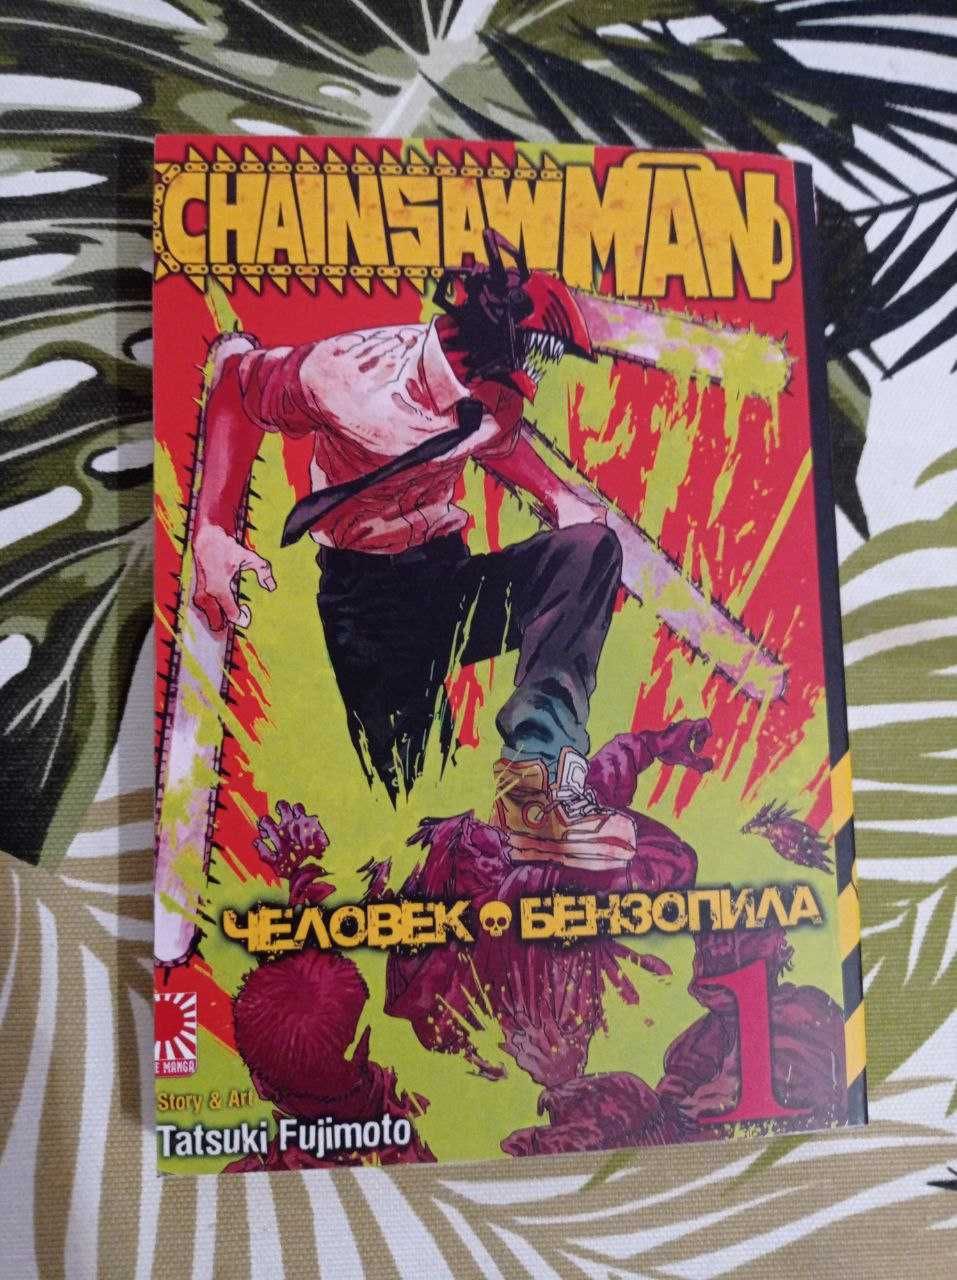 Манга Chainsaw Man/Человек-бензопила (російською) том 1